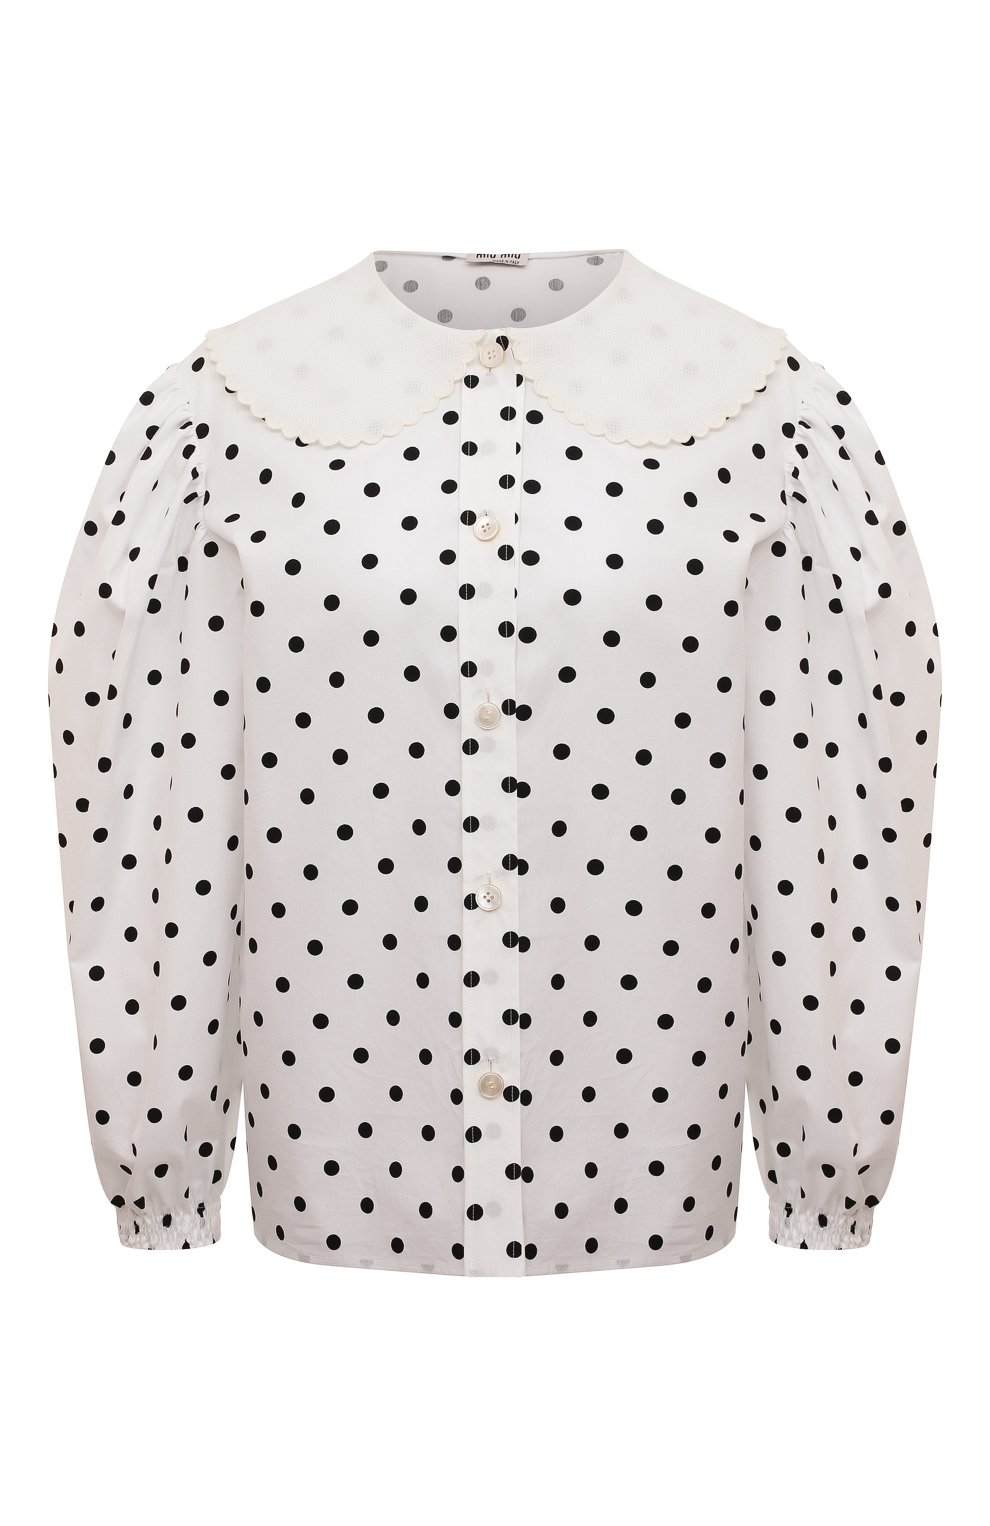 Блузы Miu Miu, Хлопковая блузка Miu Miu, Италия, Белый, Хлопок: 100%;, 12854648  - купить